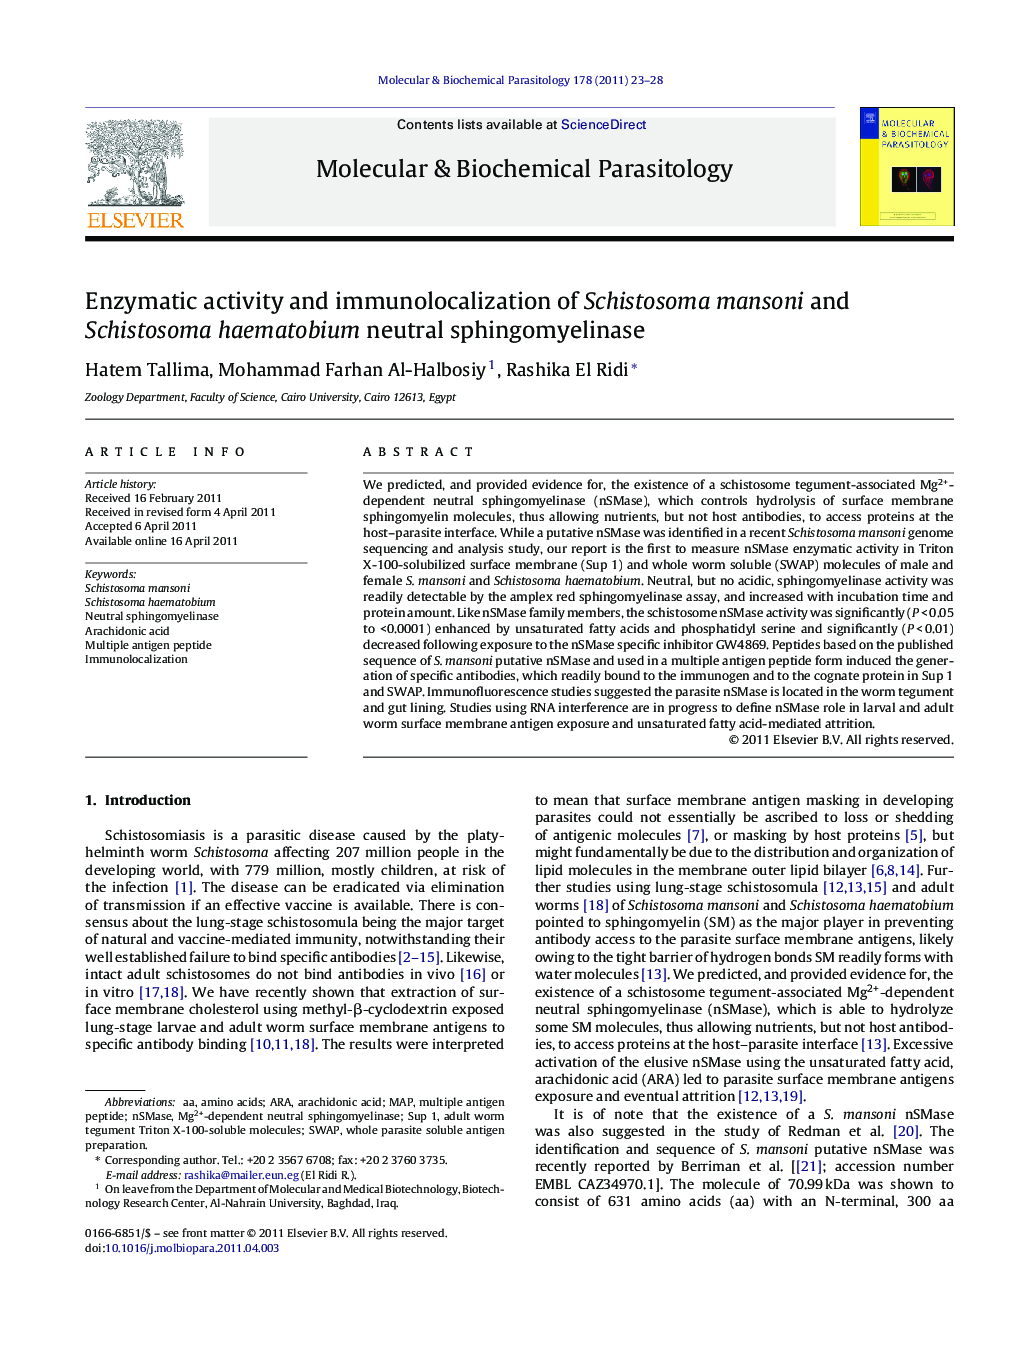 Enzymatic activity and immunolocalization of Schistosoma mansoni and Schistosoma haematobium neutral sphingomyelinase